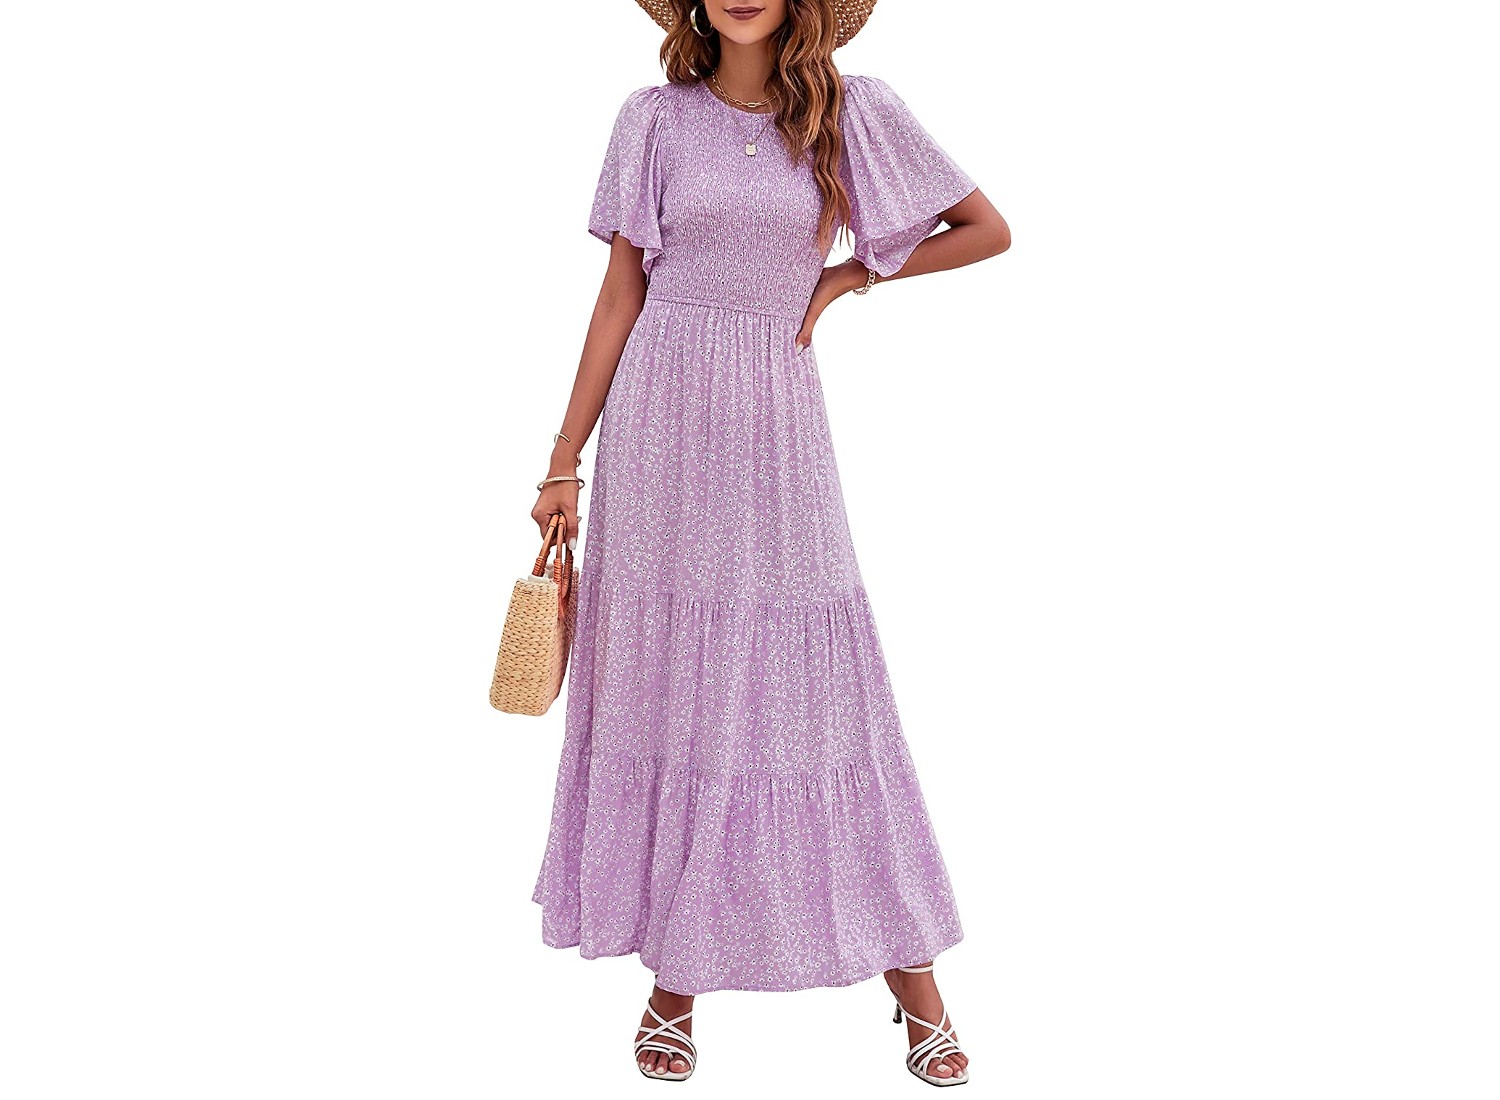 A woman wearing a purple Zesica dress.